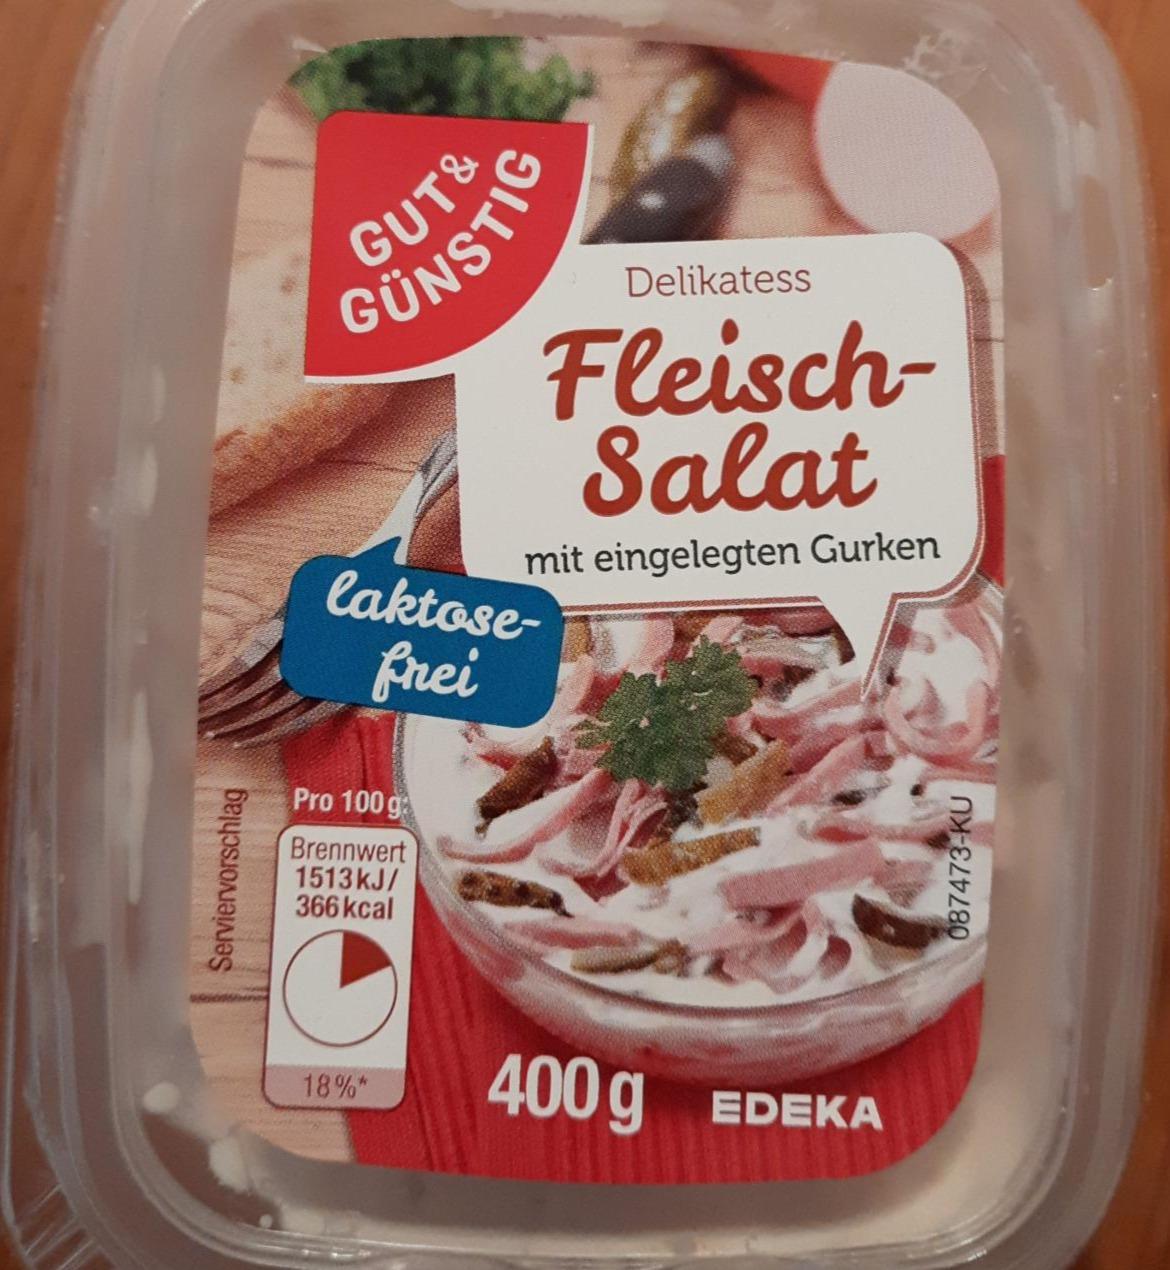 Фото - Салат м'ясний делікатесний Gut&Günstig